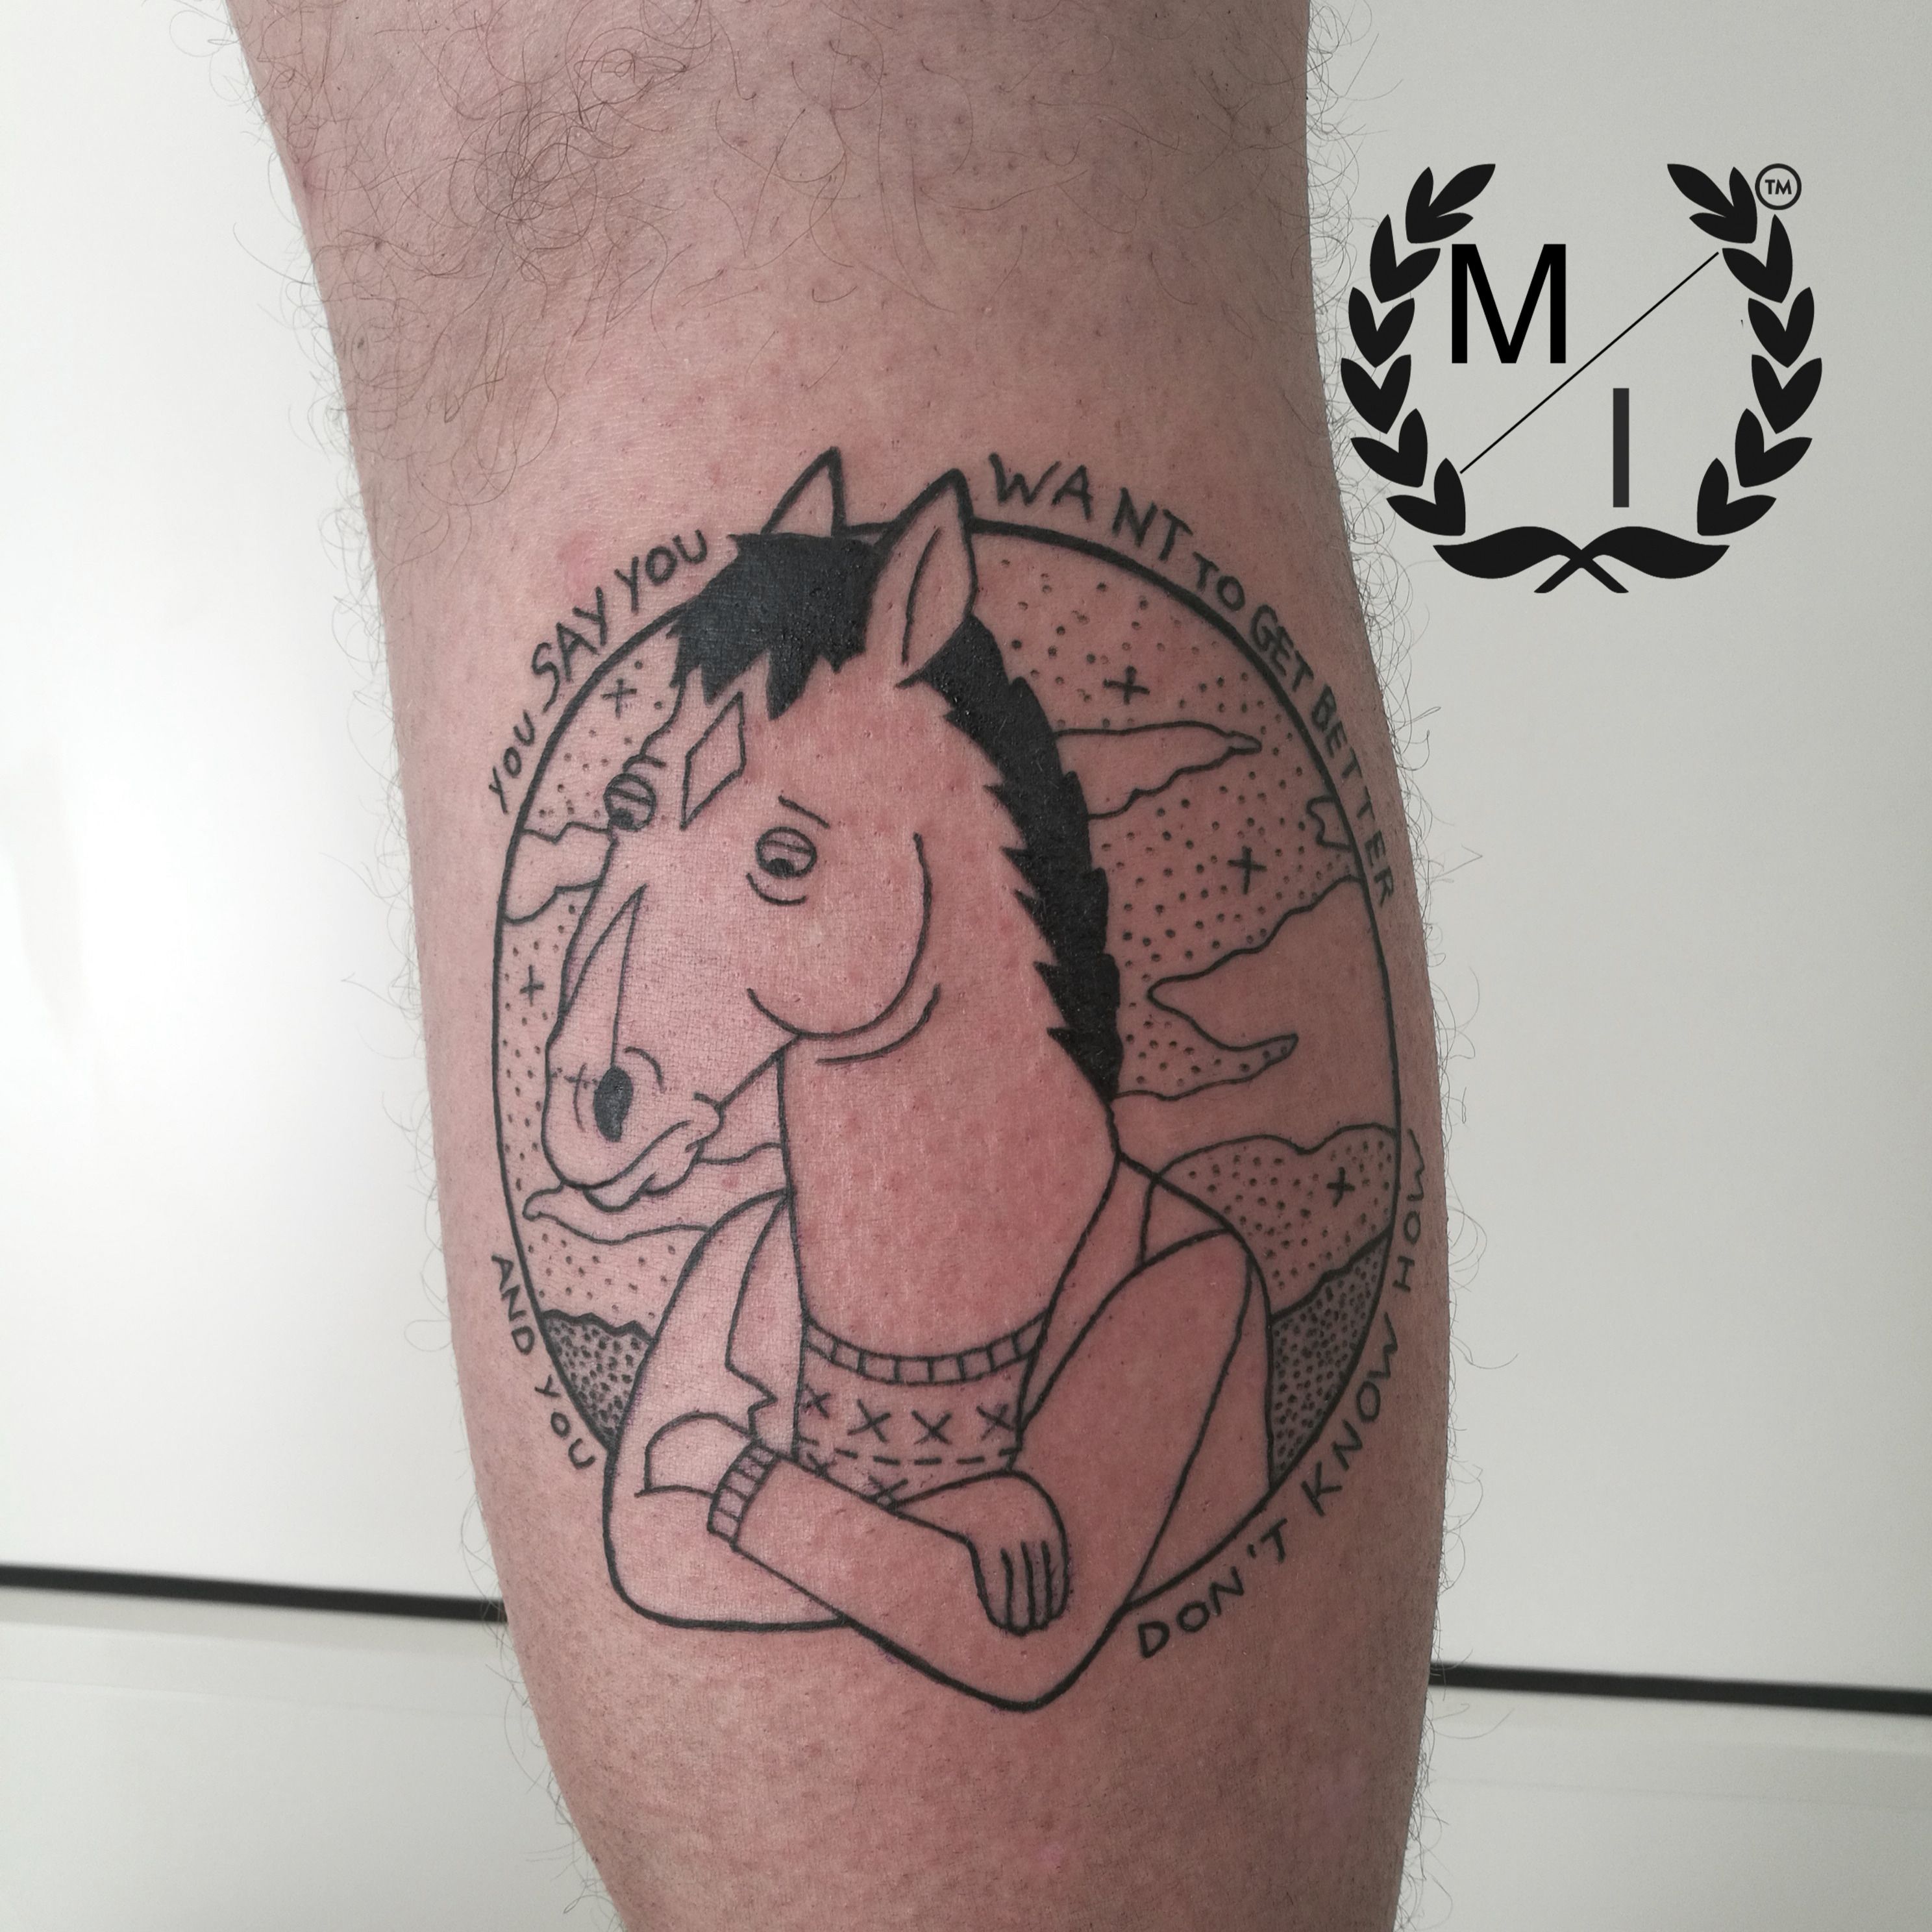 Bojack Horseman  Bojack horseman Tattoos Dainty tattoos